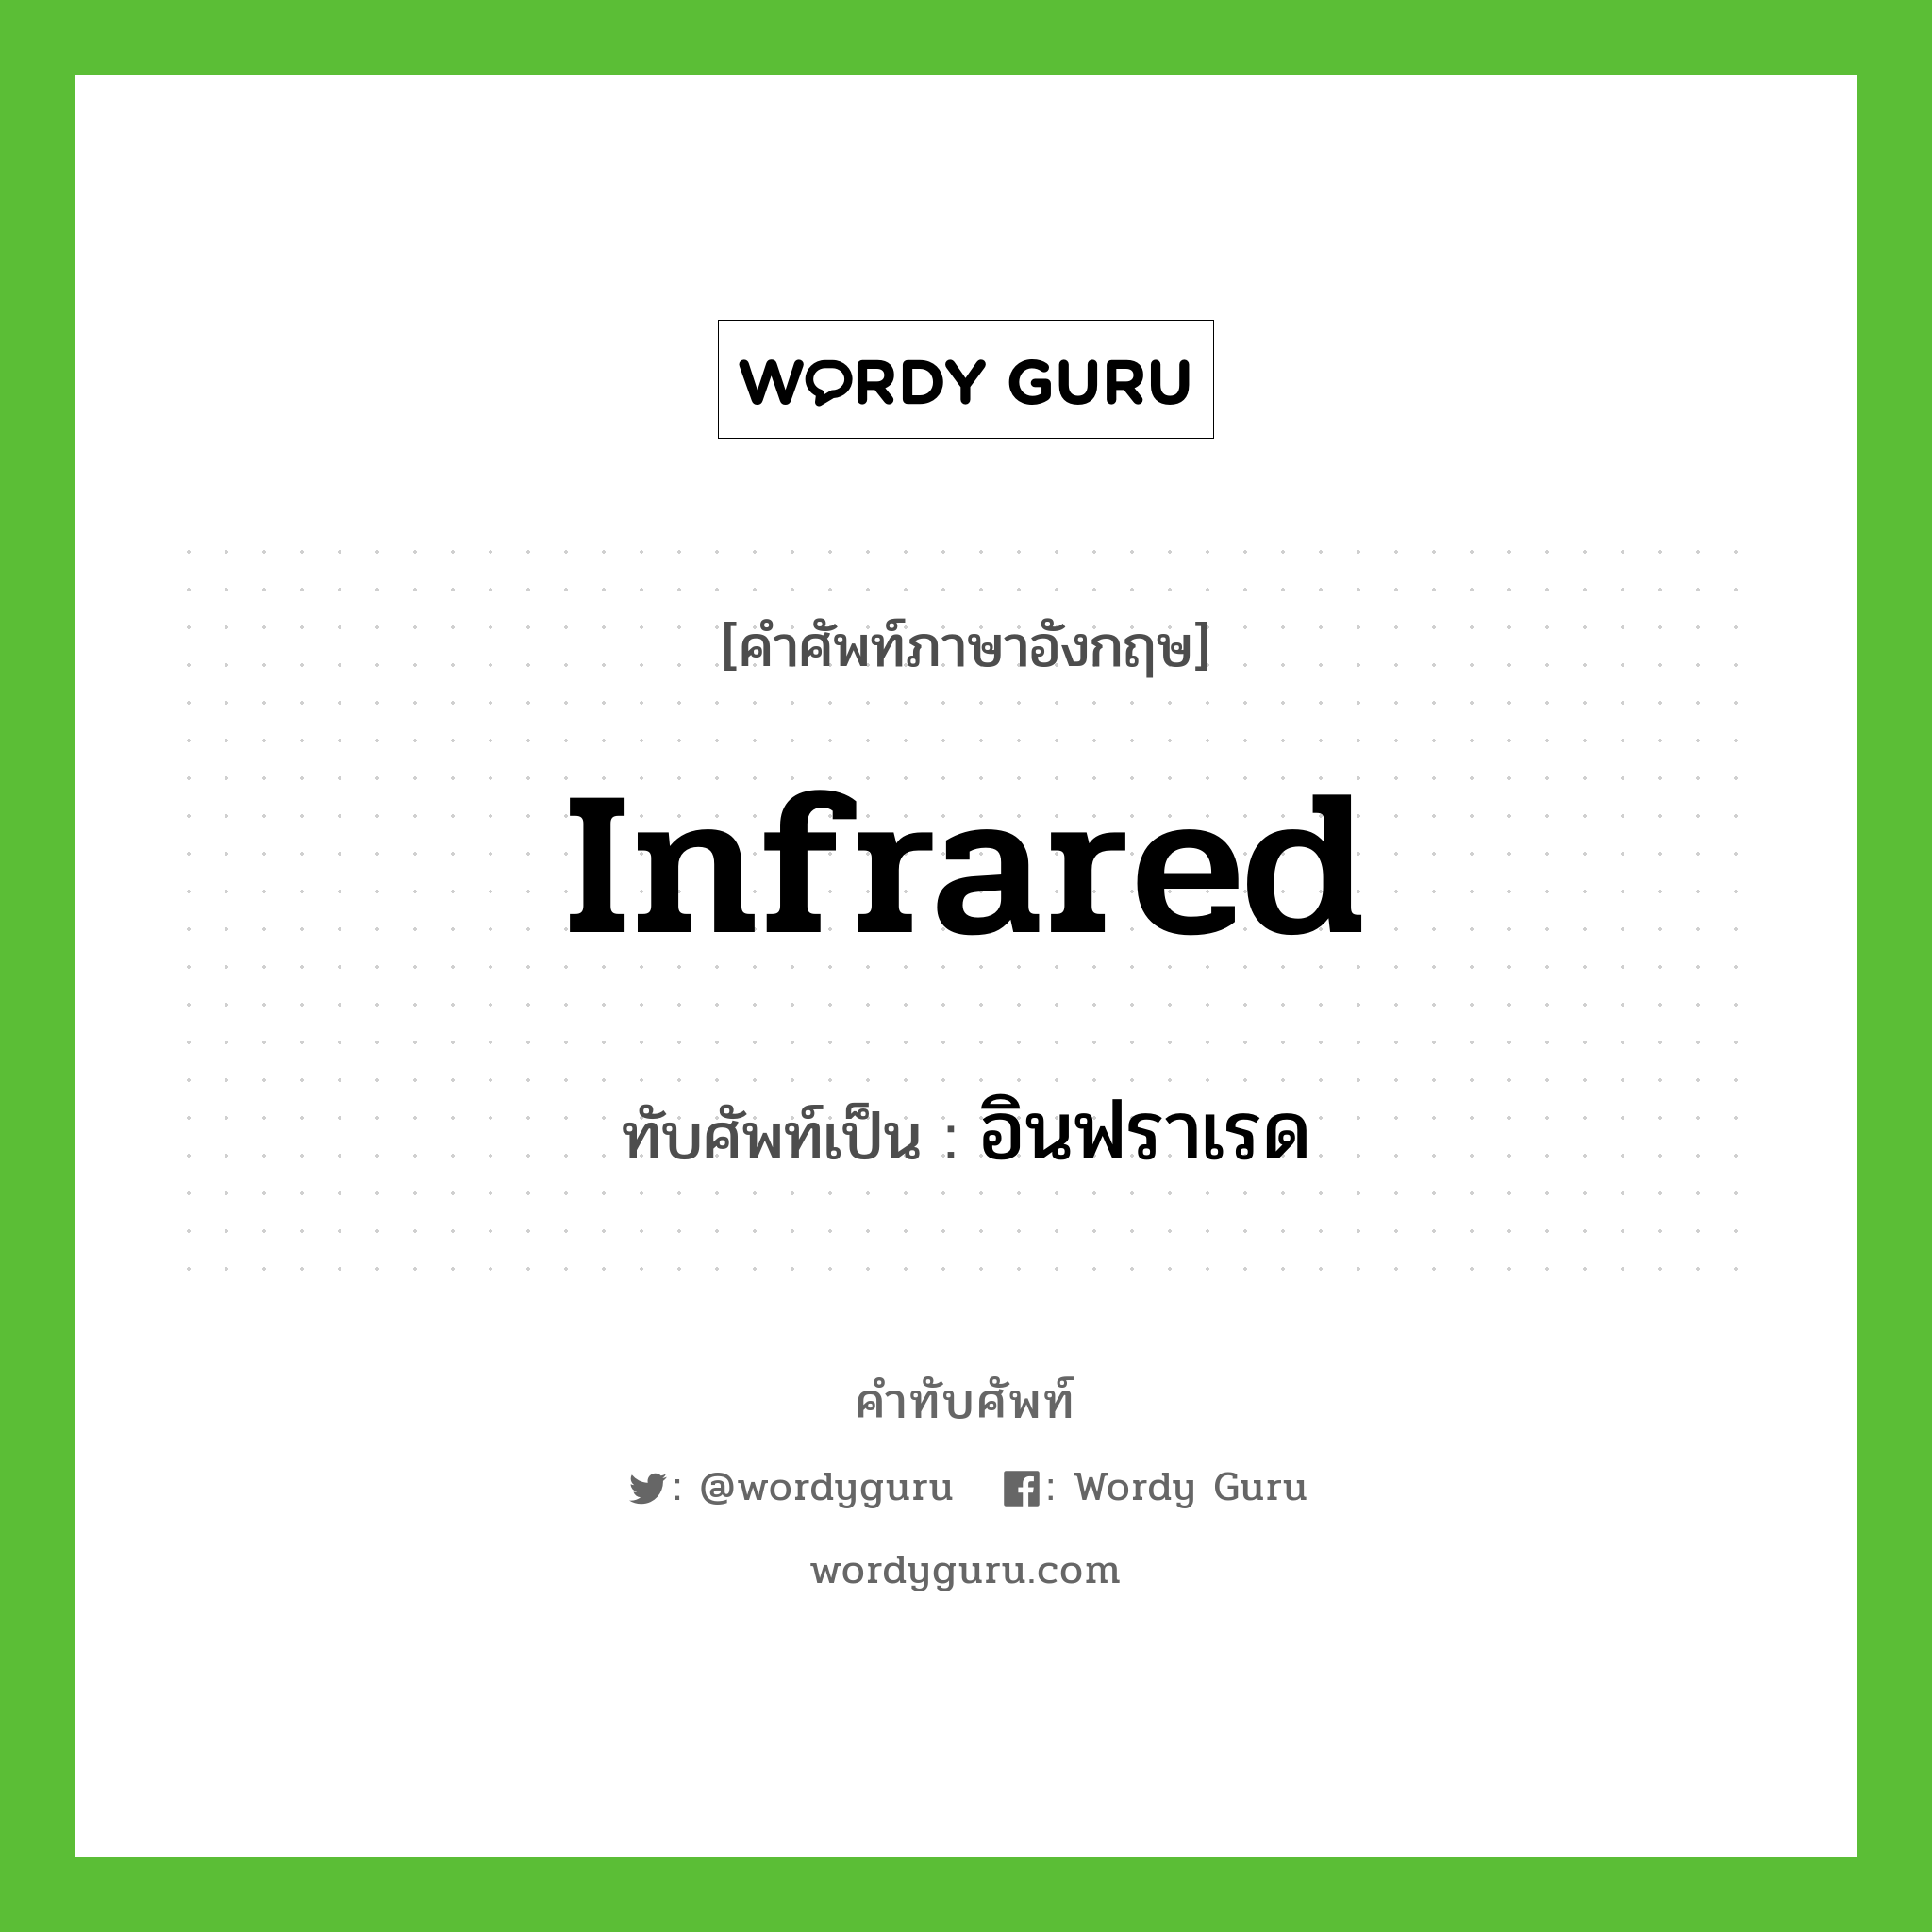 infrared เขียนเป็นคำไทยว่าอะไร?, คำศัพท์ภาษาอังกฤษ infrared ทับศัพท์เป็น อินฟราเรด